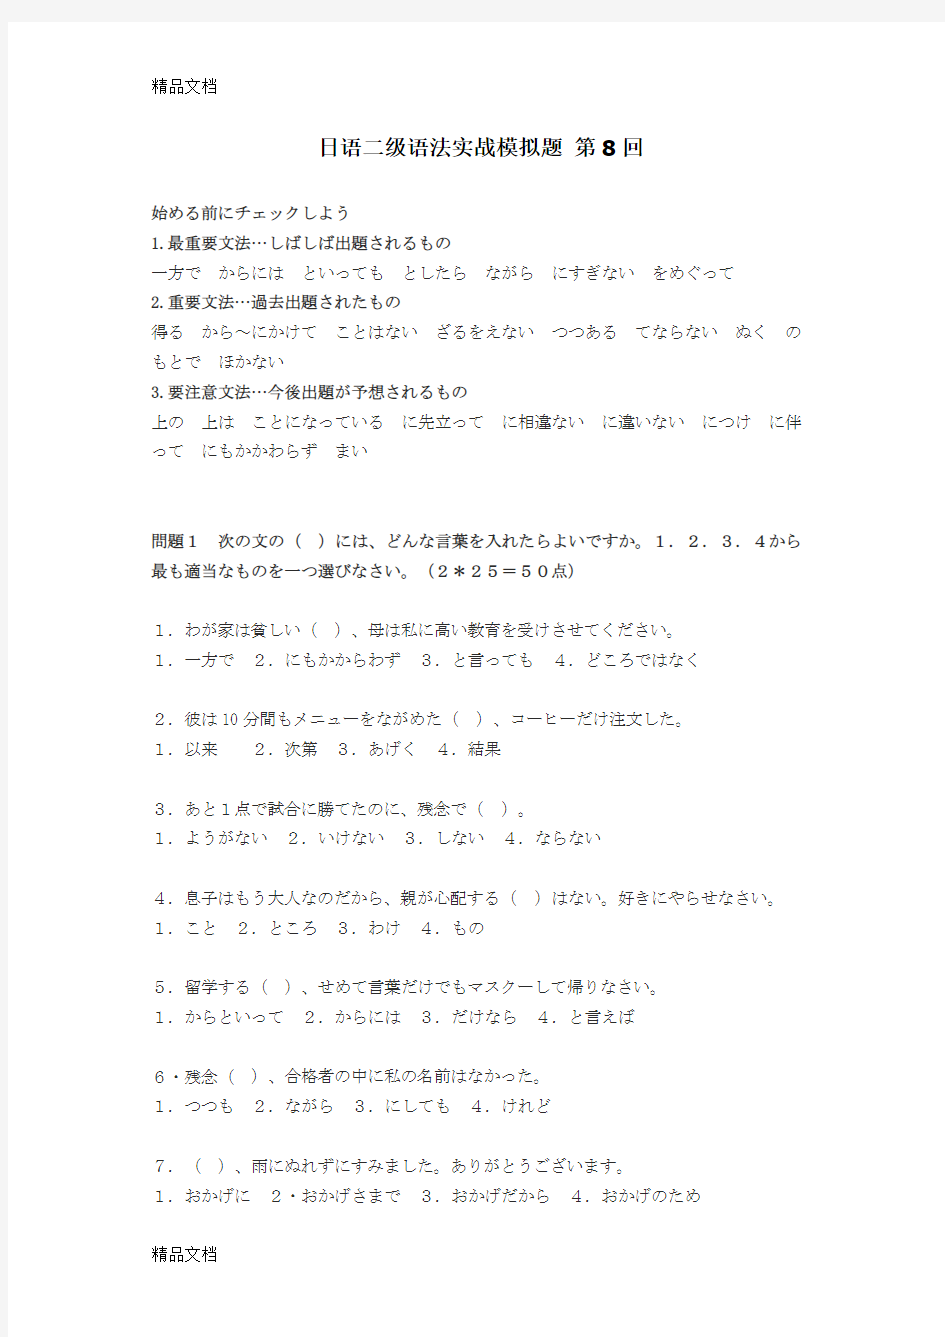 日语二级语法实战模拟题 第8回教案资料